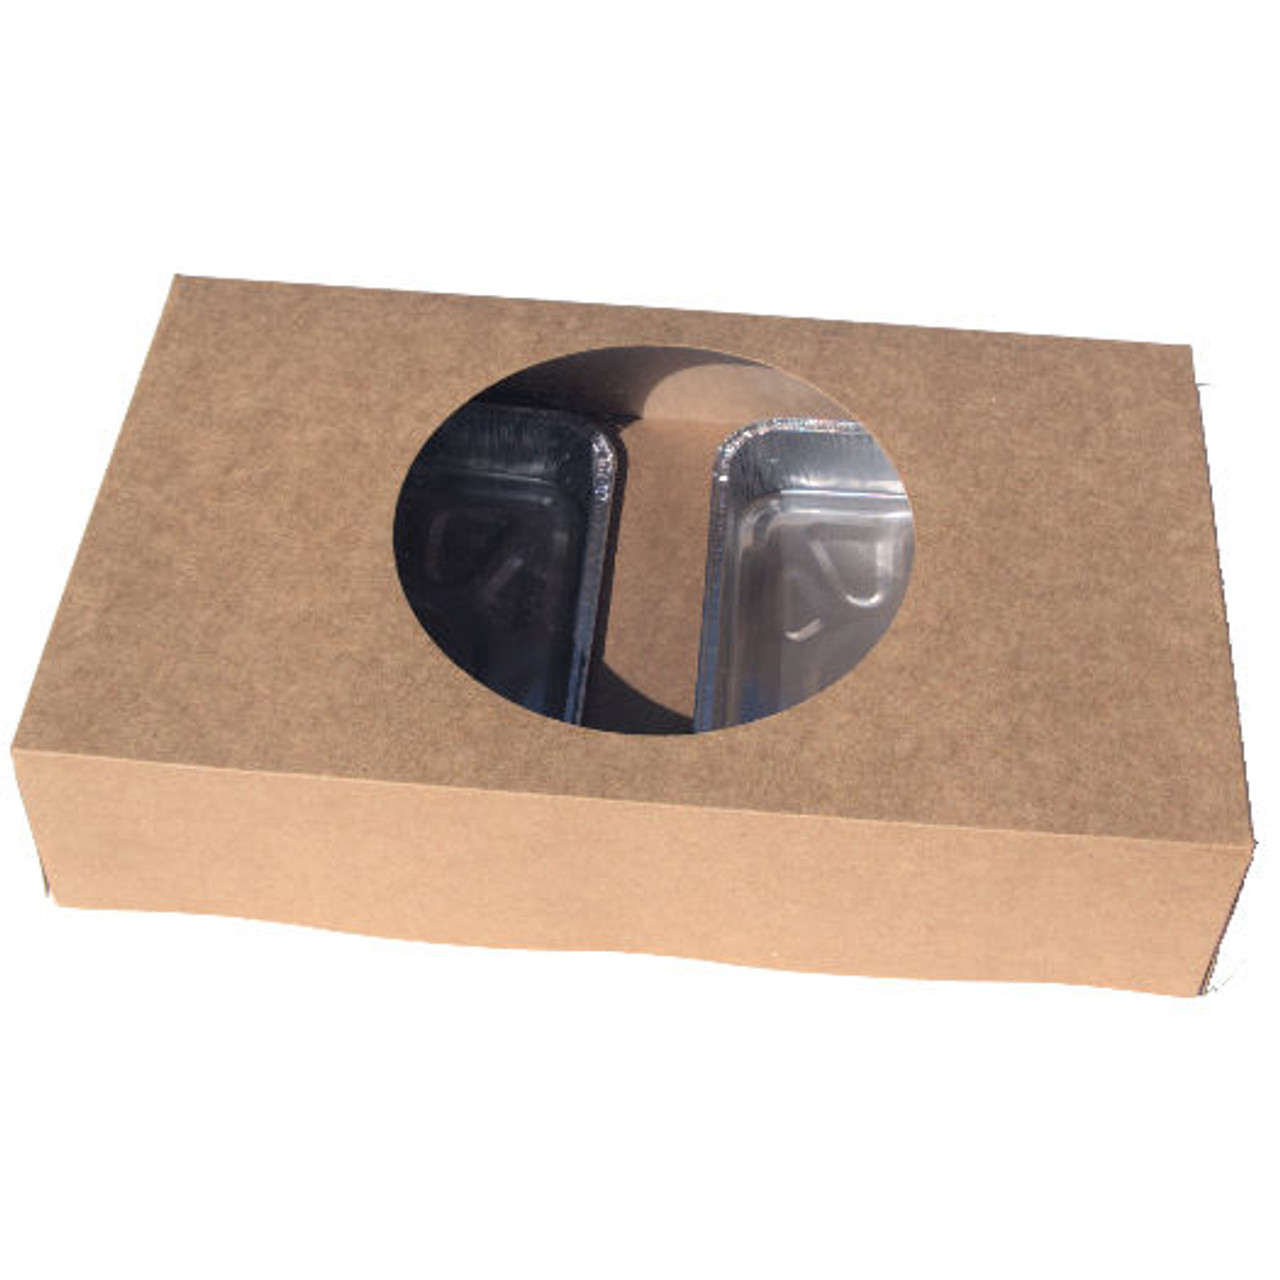 Pack x 10 Quality Kraft Cardboard Dual size Tray Bake Box with window 330 x 200 x 75mm 